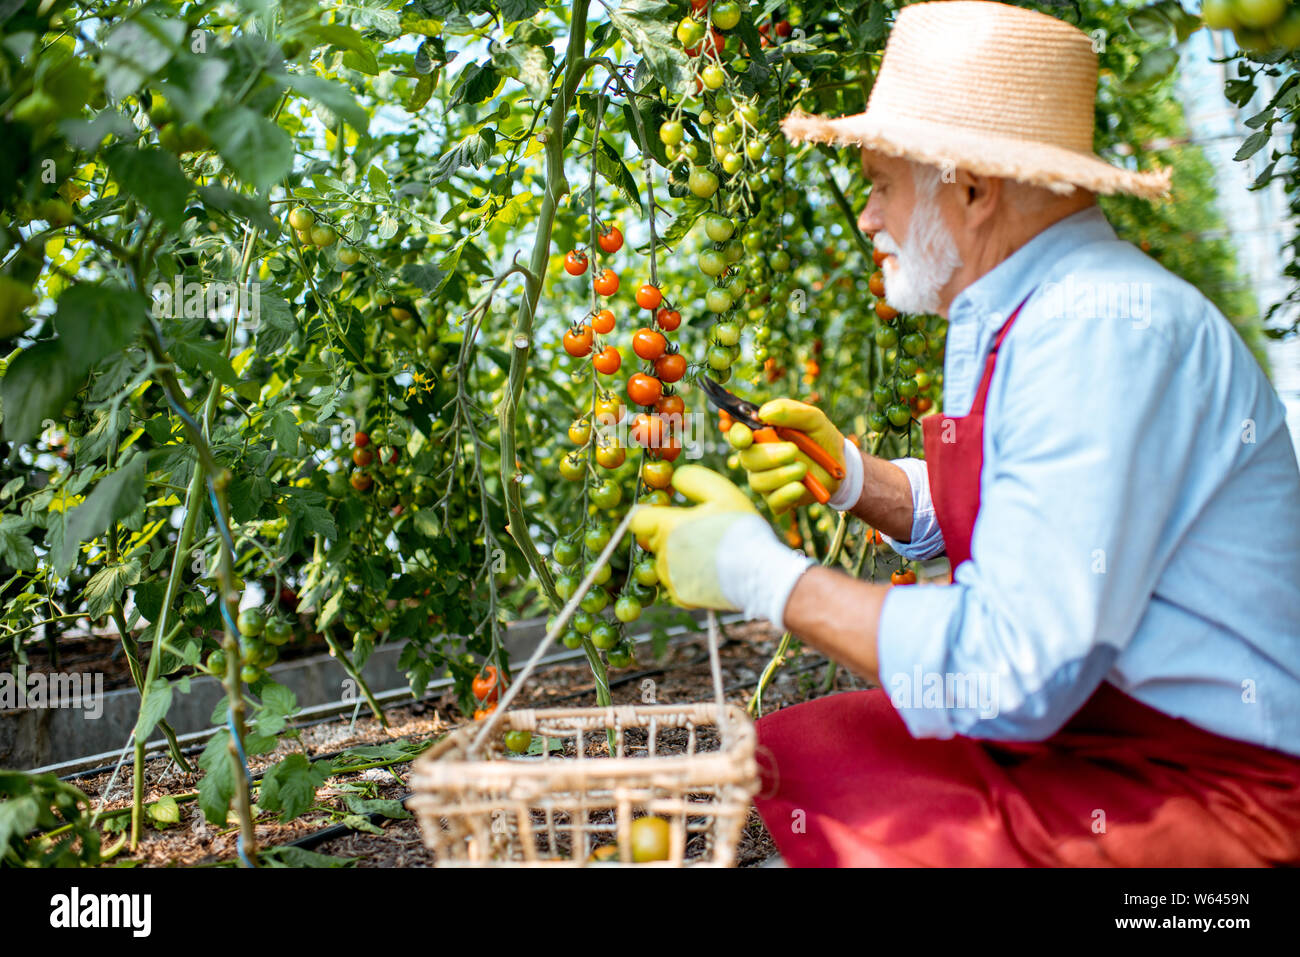 Man la collecte de la récolte de tomates dans la serre d'une petite ferme agricole. Concept d'une petite beauté et de travailler à l'âge de la retraite Banque D'Images